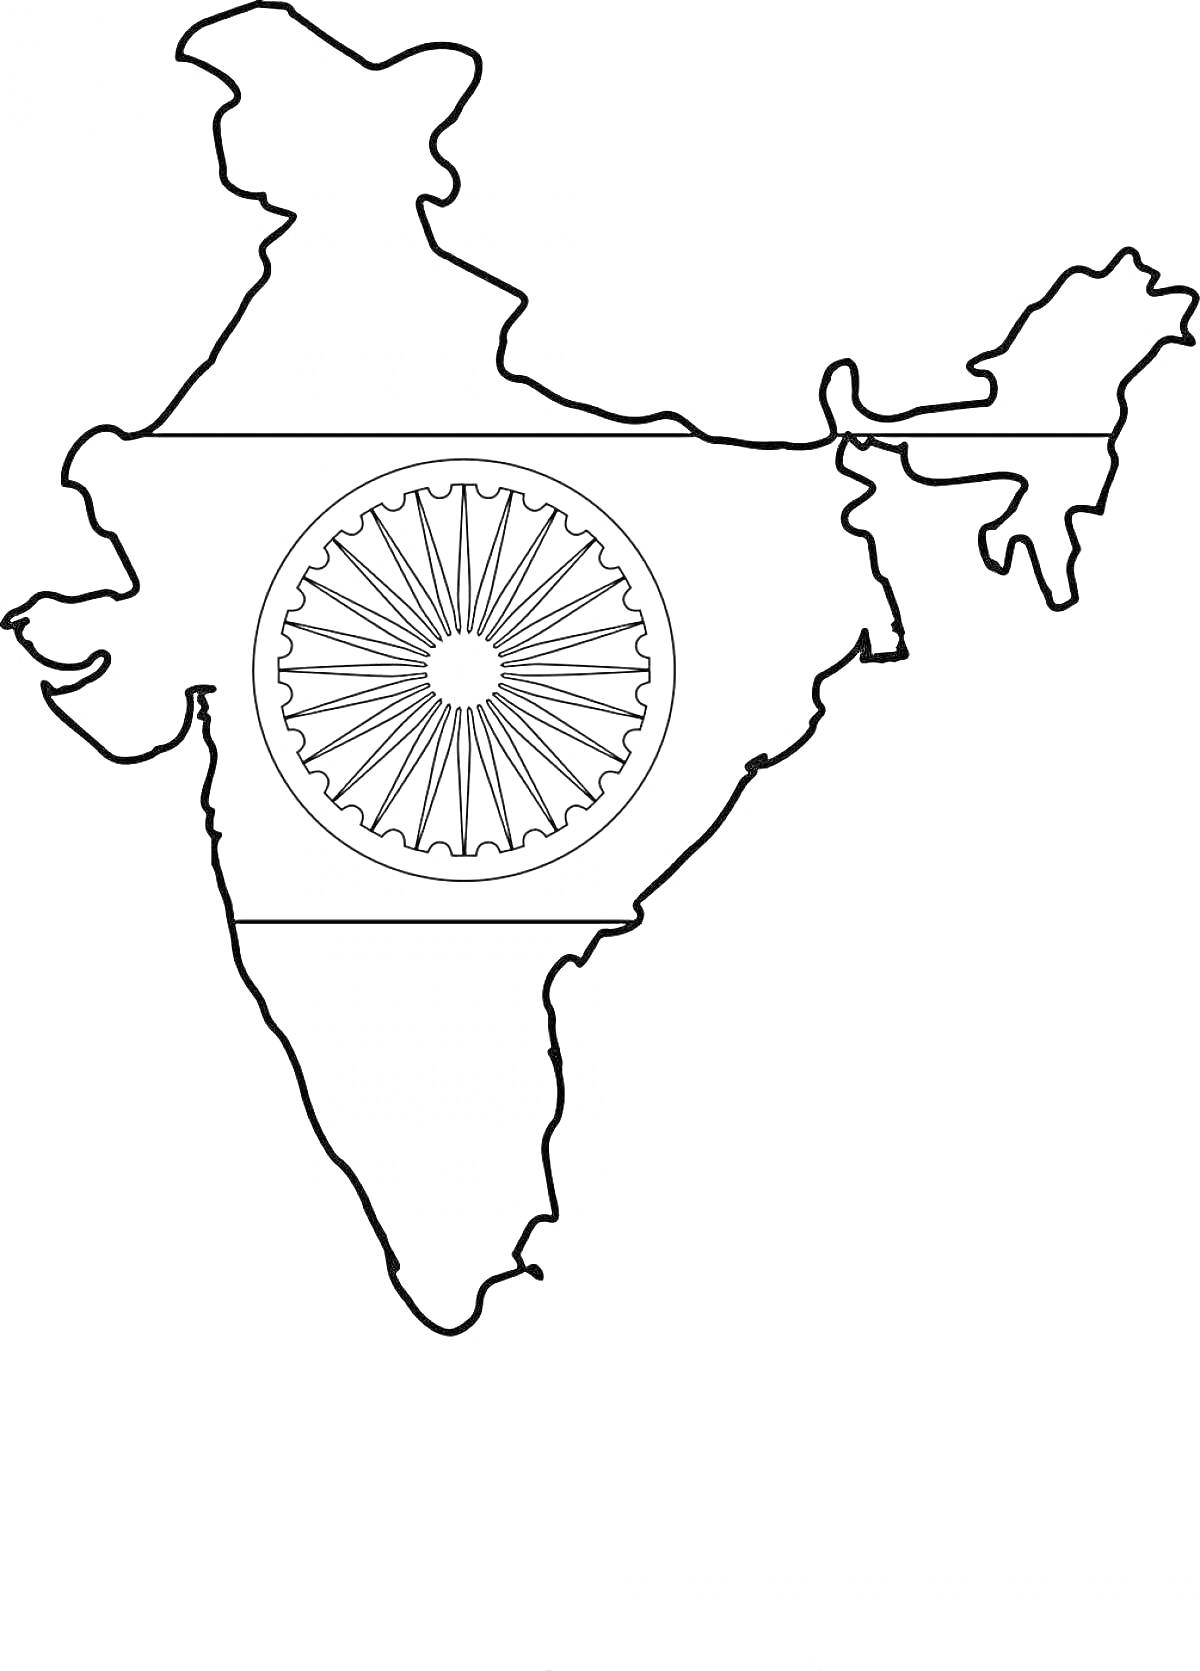 Раскраска Контур карты Индии со стилизованным изображением флага Индии с колесом Ашока